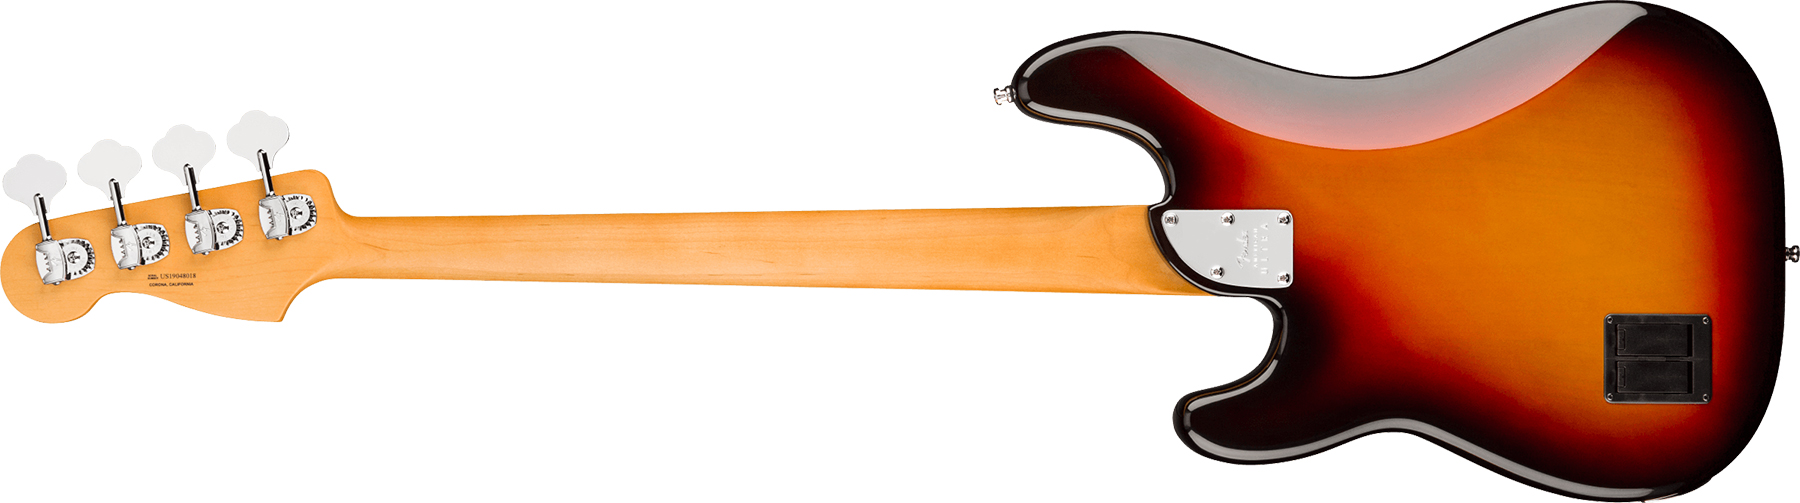 Fender Precision Bass American Ultra 2019 Usa Rw - Ultraburst - Bajo eléctrico de cuerpo sólido - Variation 1